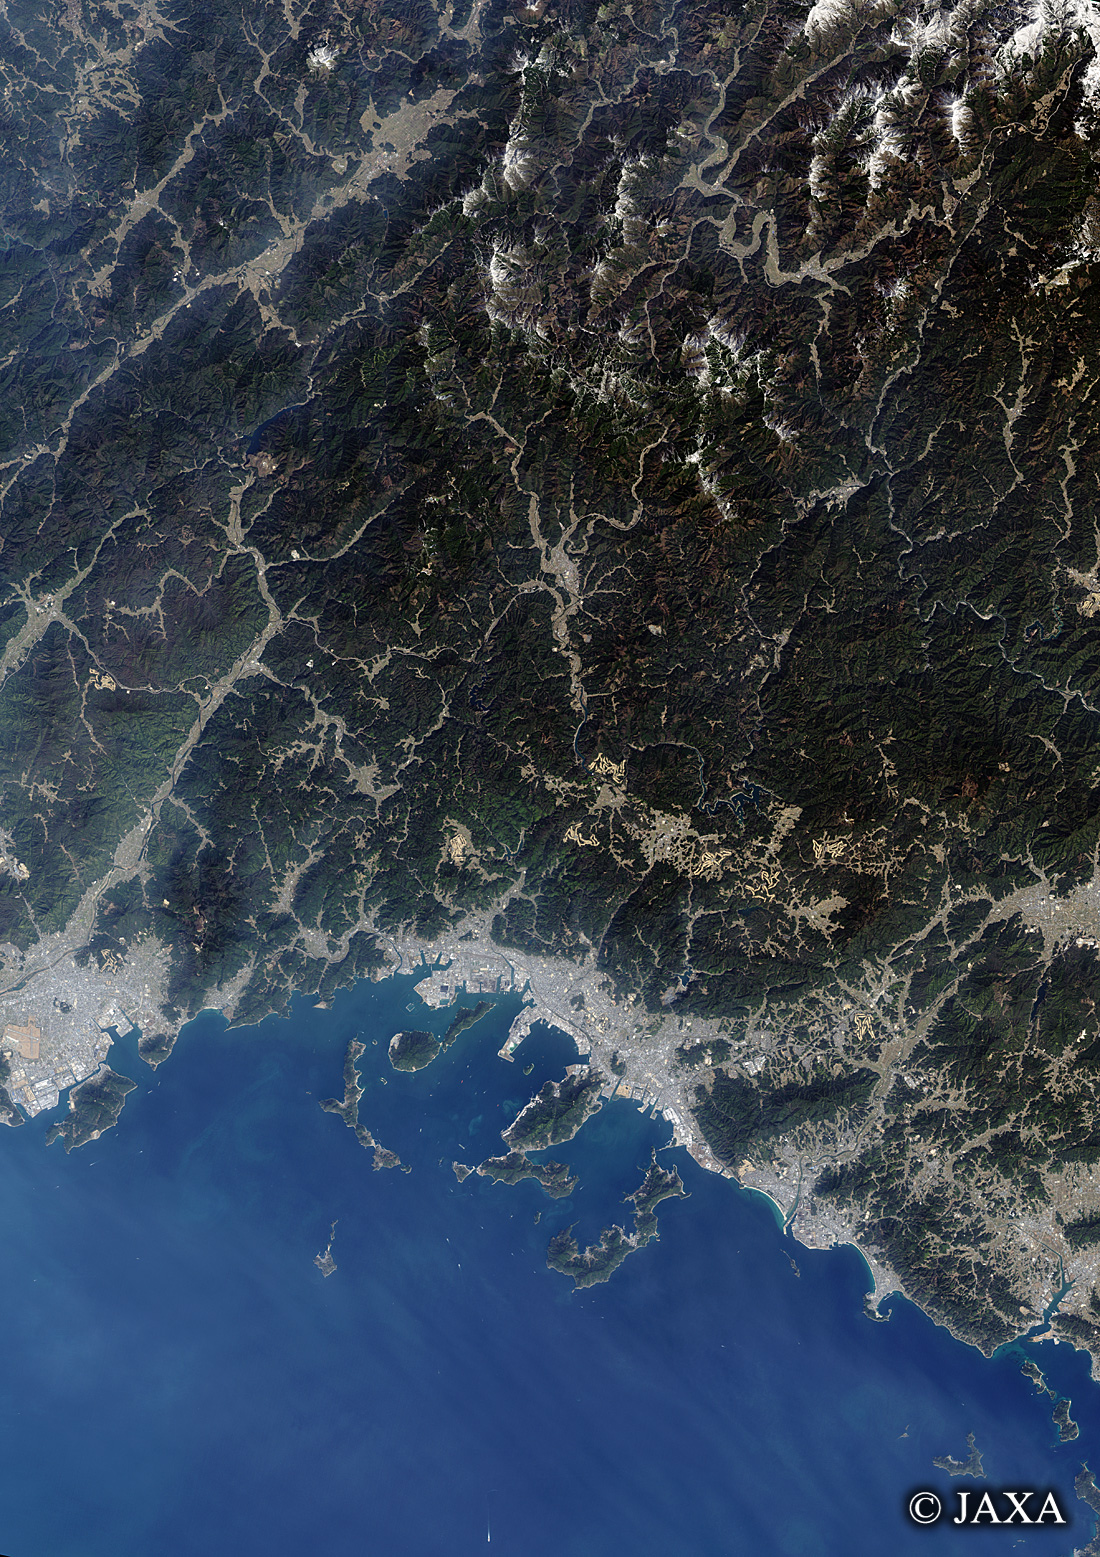 だいちから見た日本の都市 周南市周辺:衛星画像